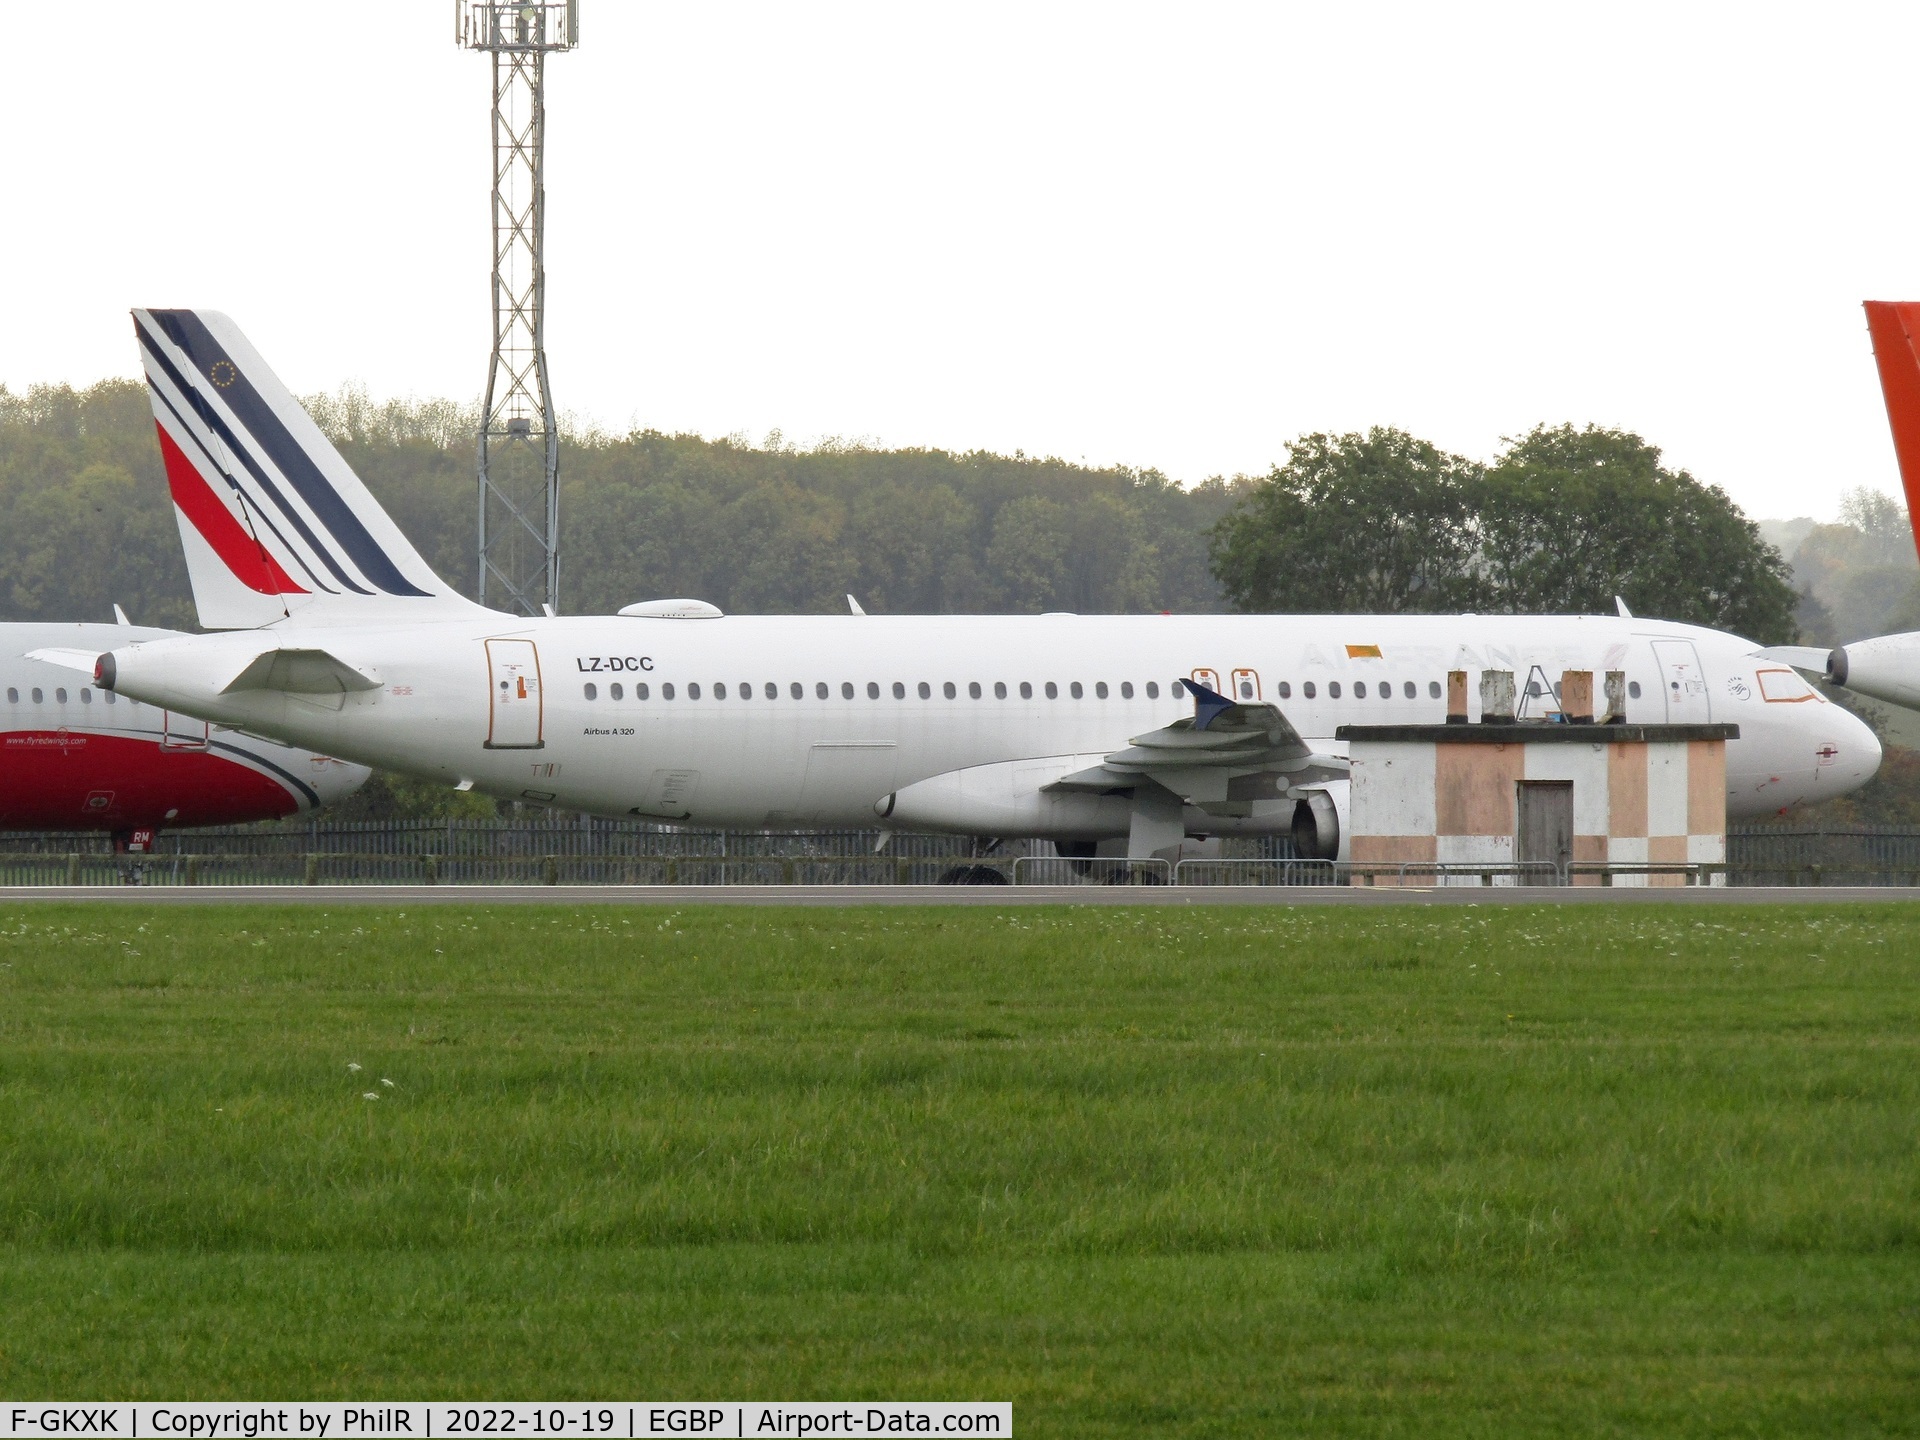 F-GKXK, 2003 Airbus A320-214 C/N 2140, LZ-DCC (F-GKXK) 2003 Airbus A320-200 Air France Kemble